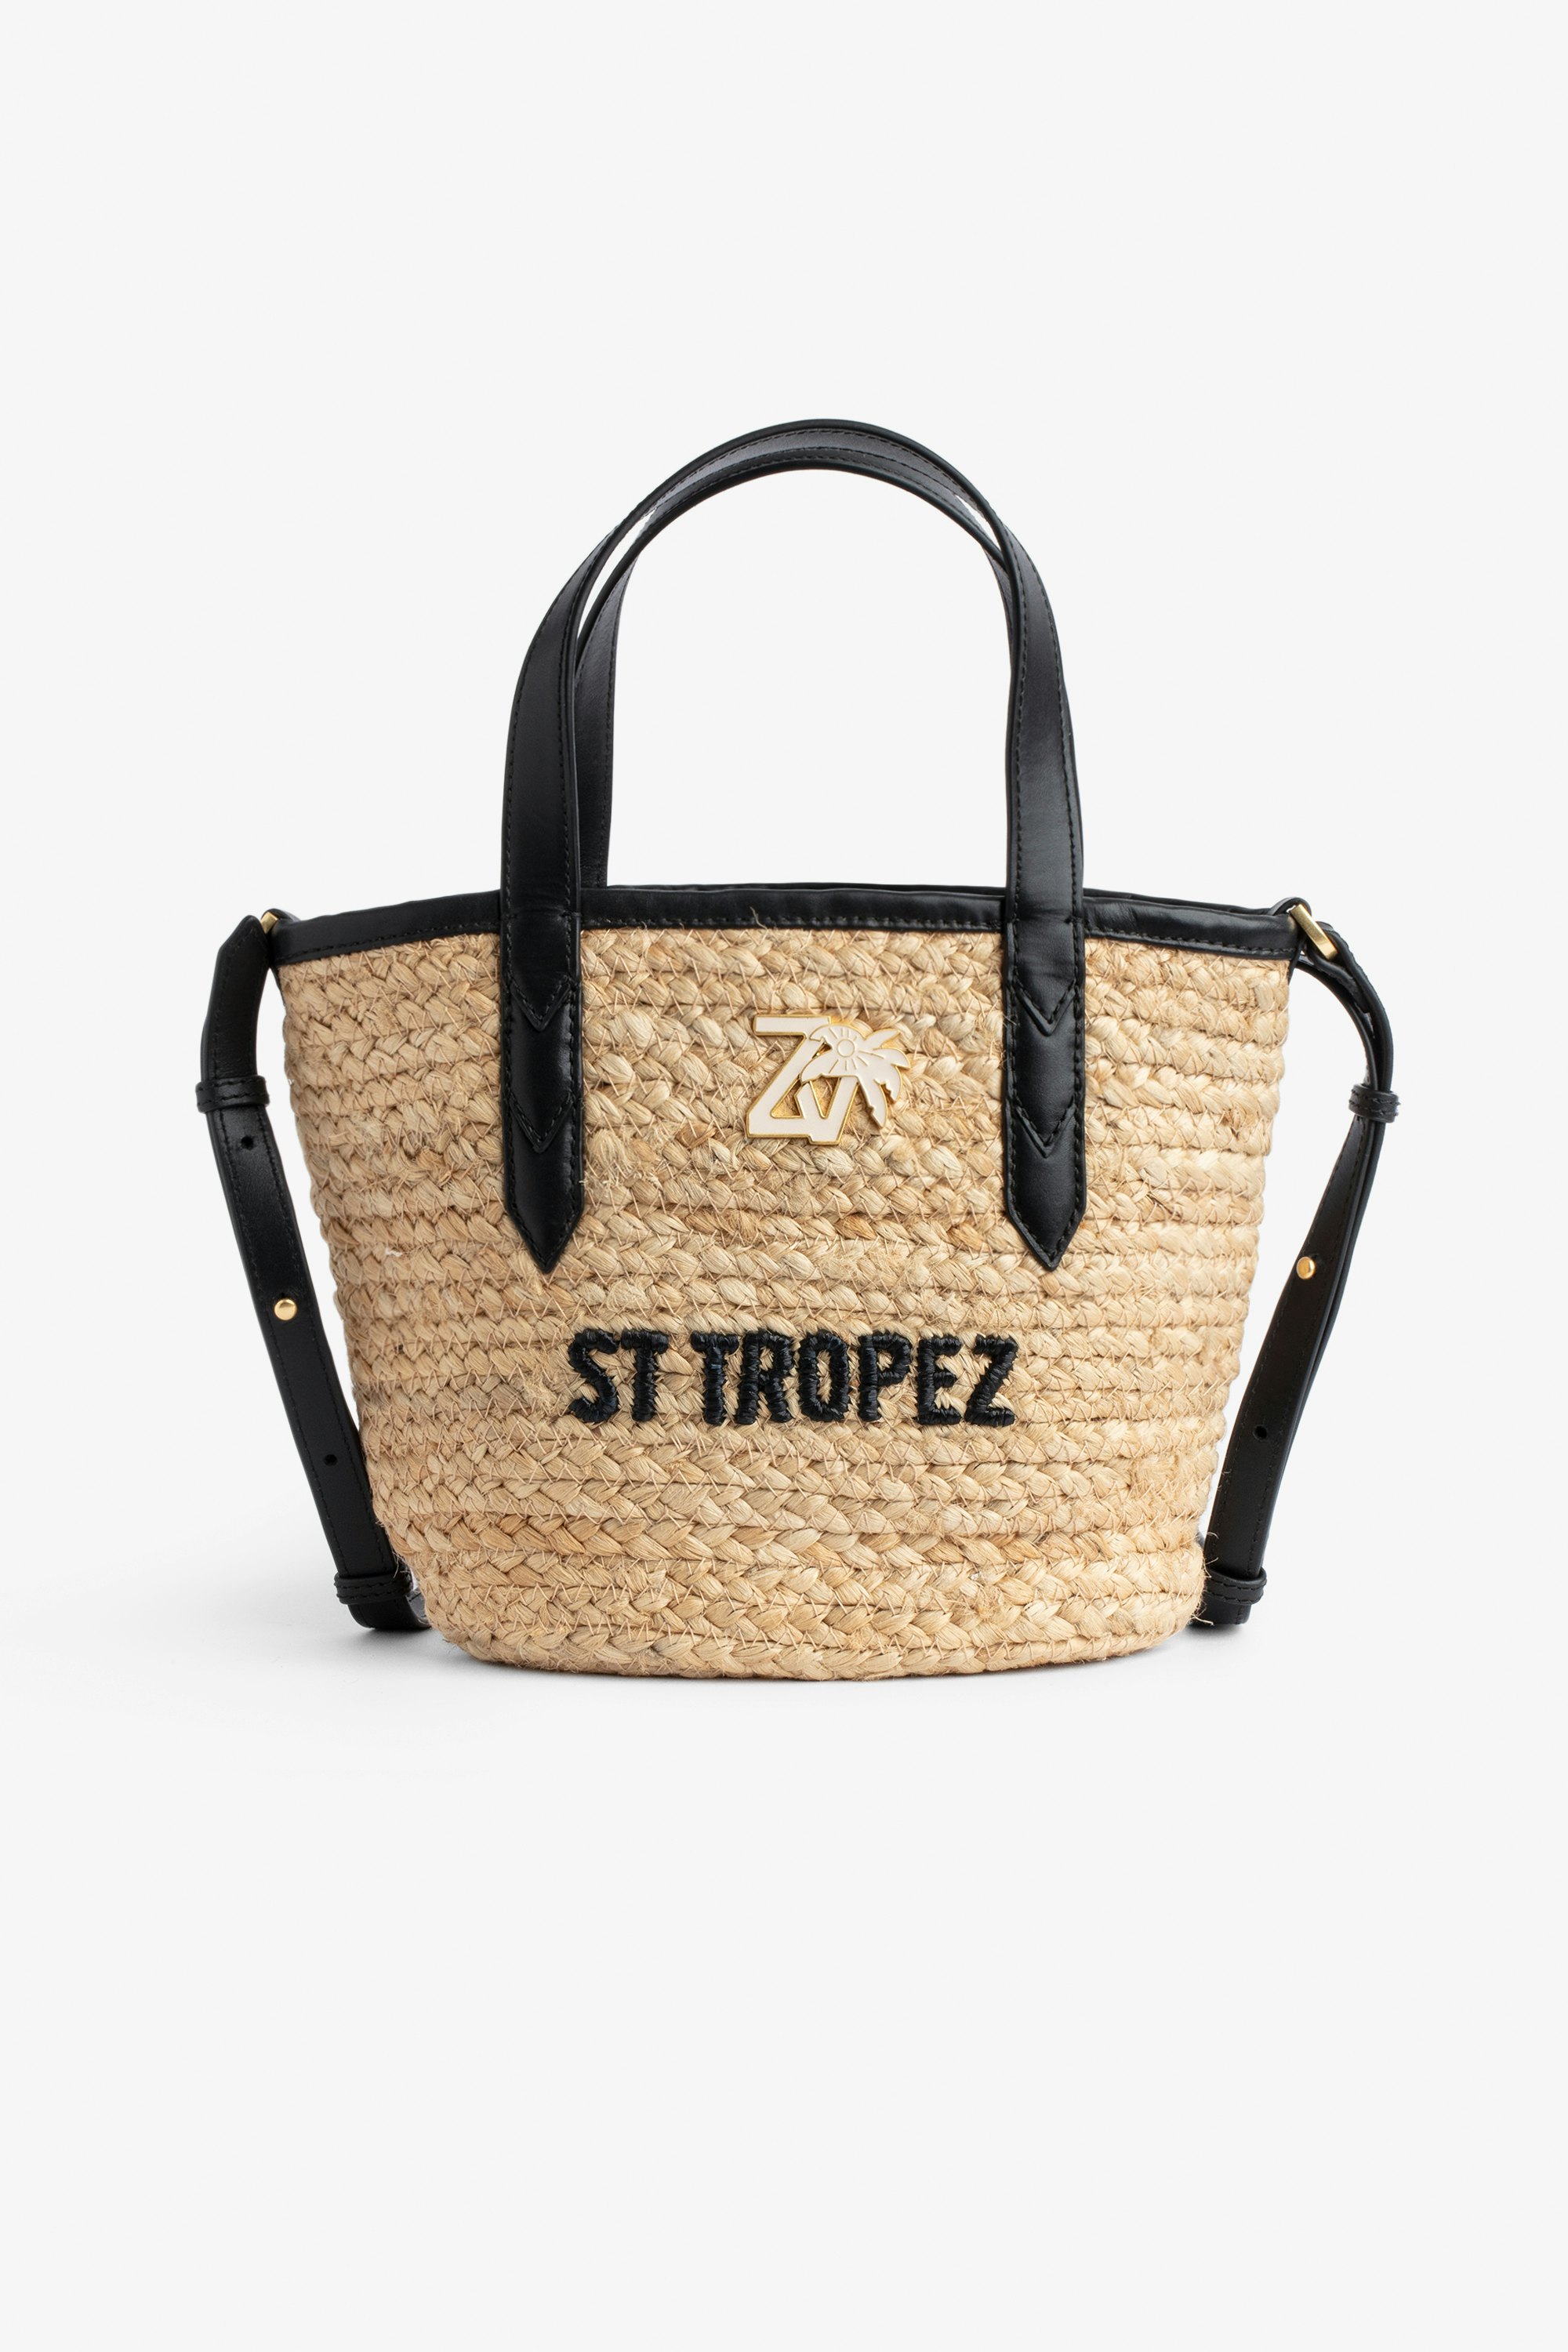 Le Baby Beach Bag ブラックレザー ショルダーストラップ ストローバッグ 「St Tropez」刺繍、ZV チャーム付き レディース